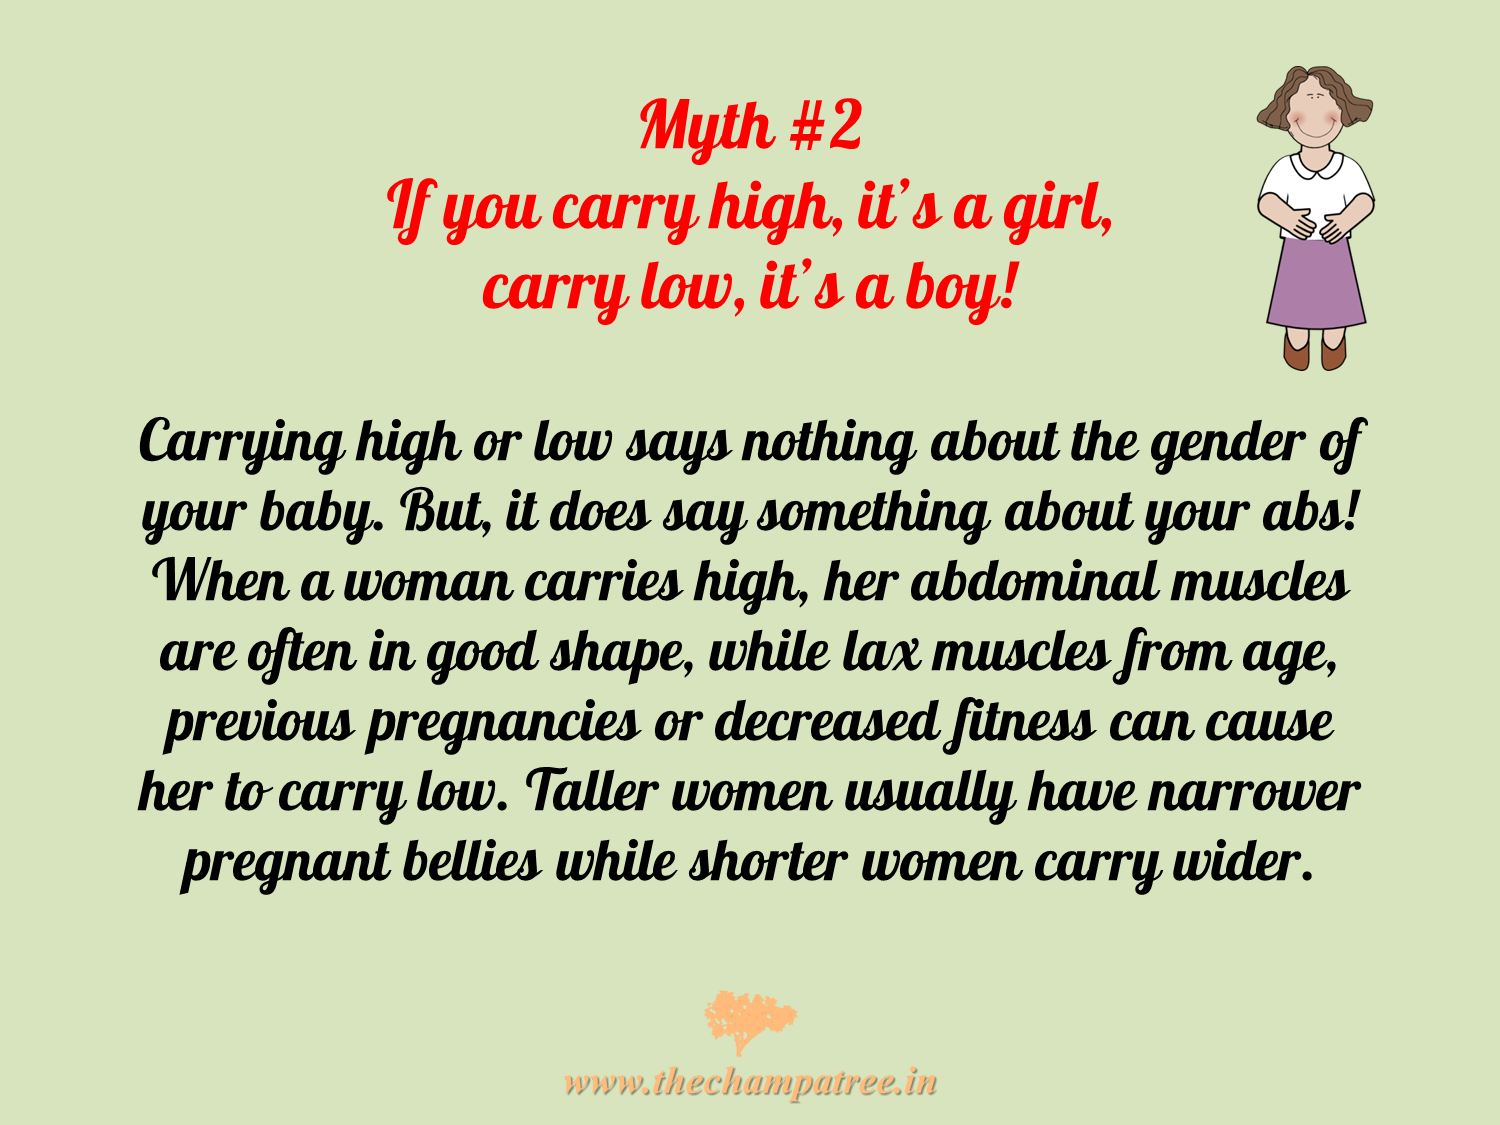 Pregnancy myth 03